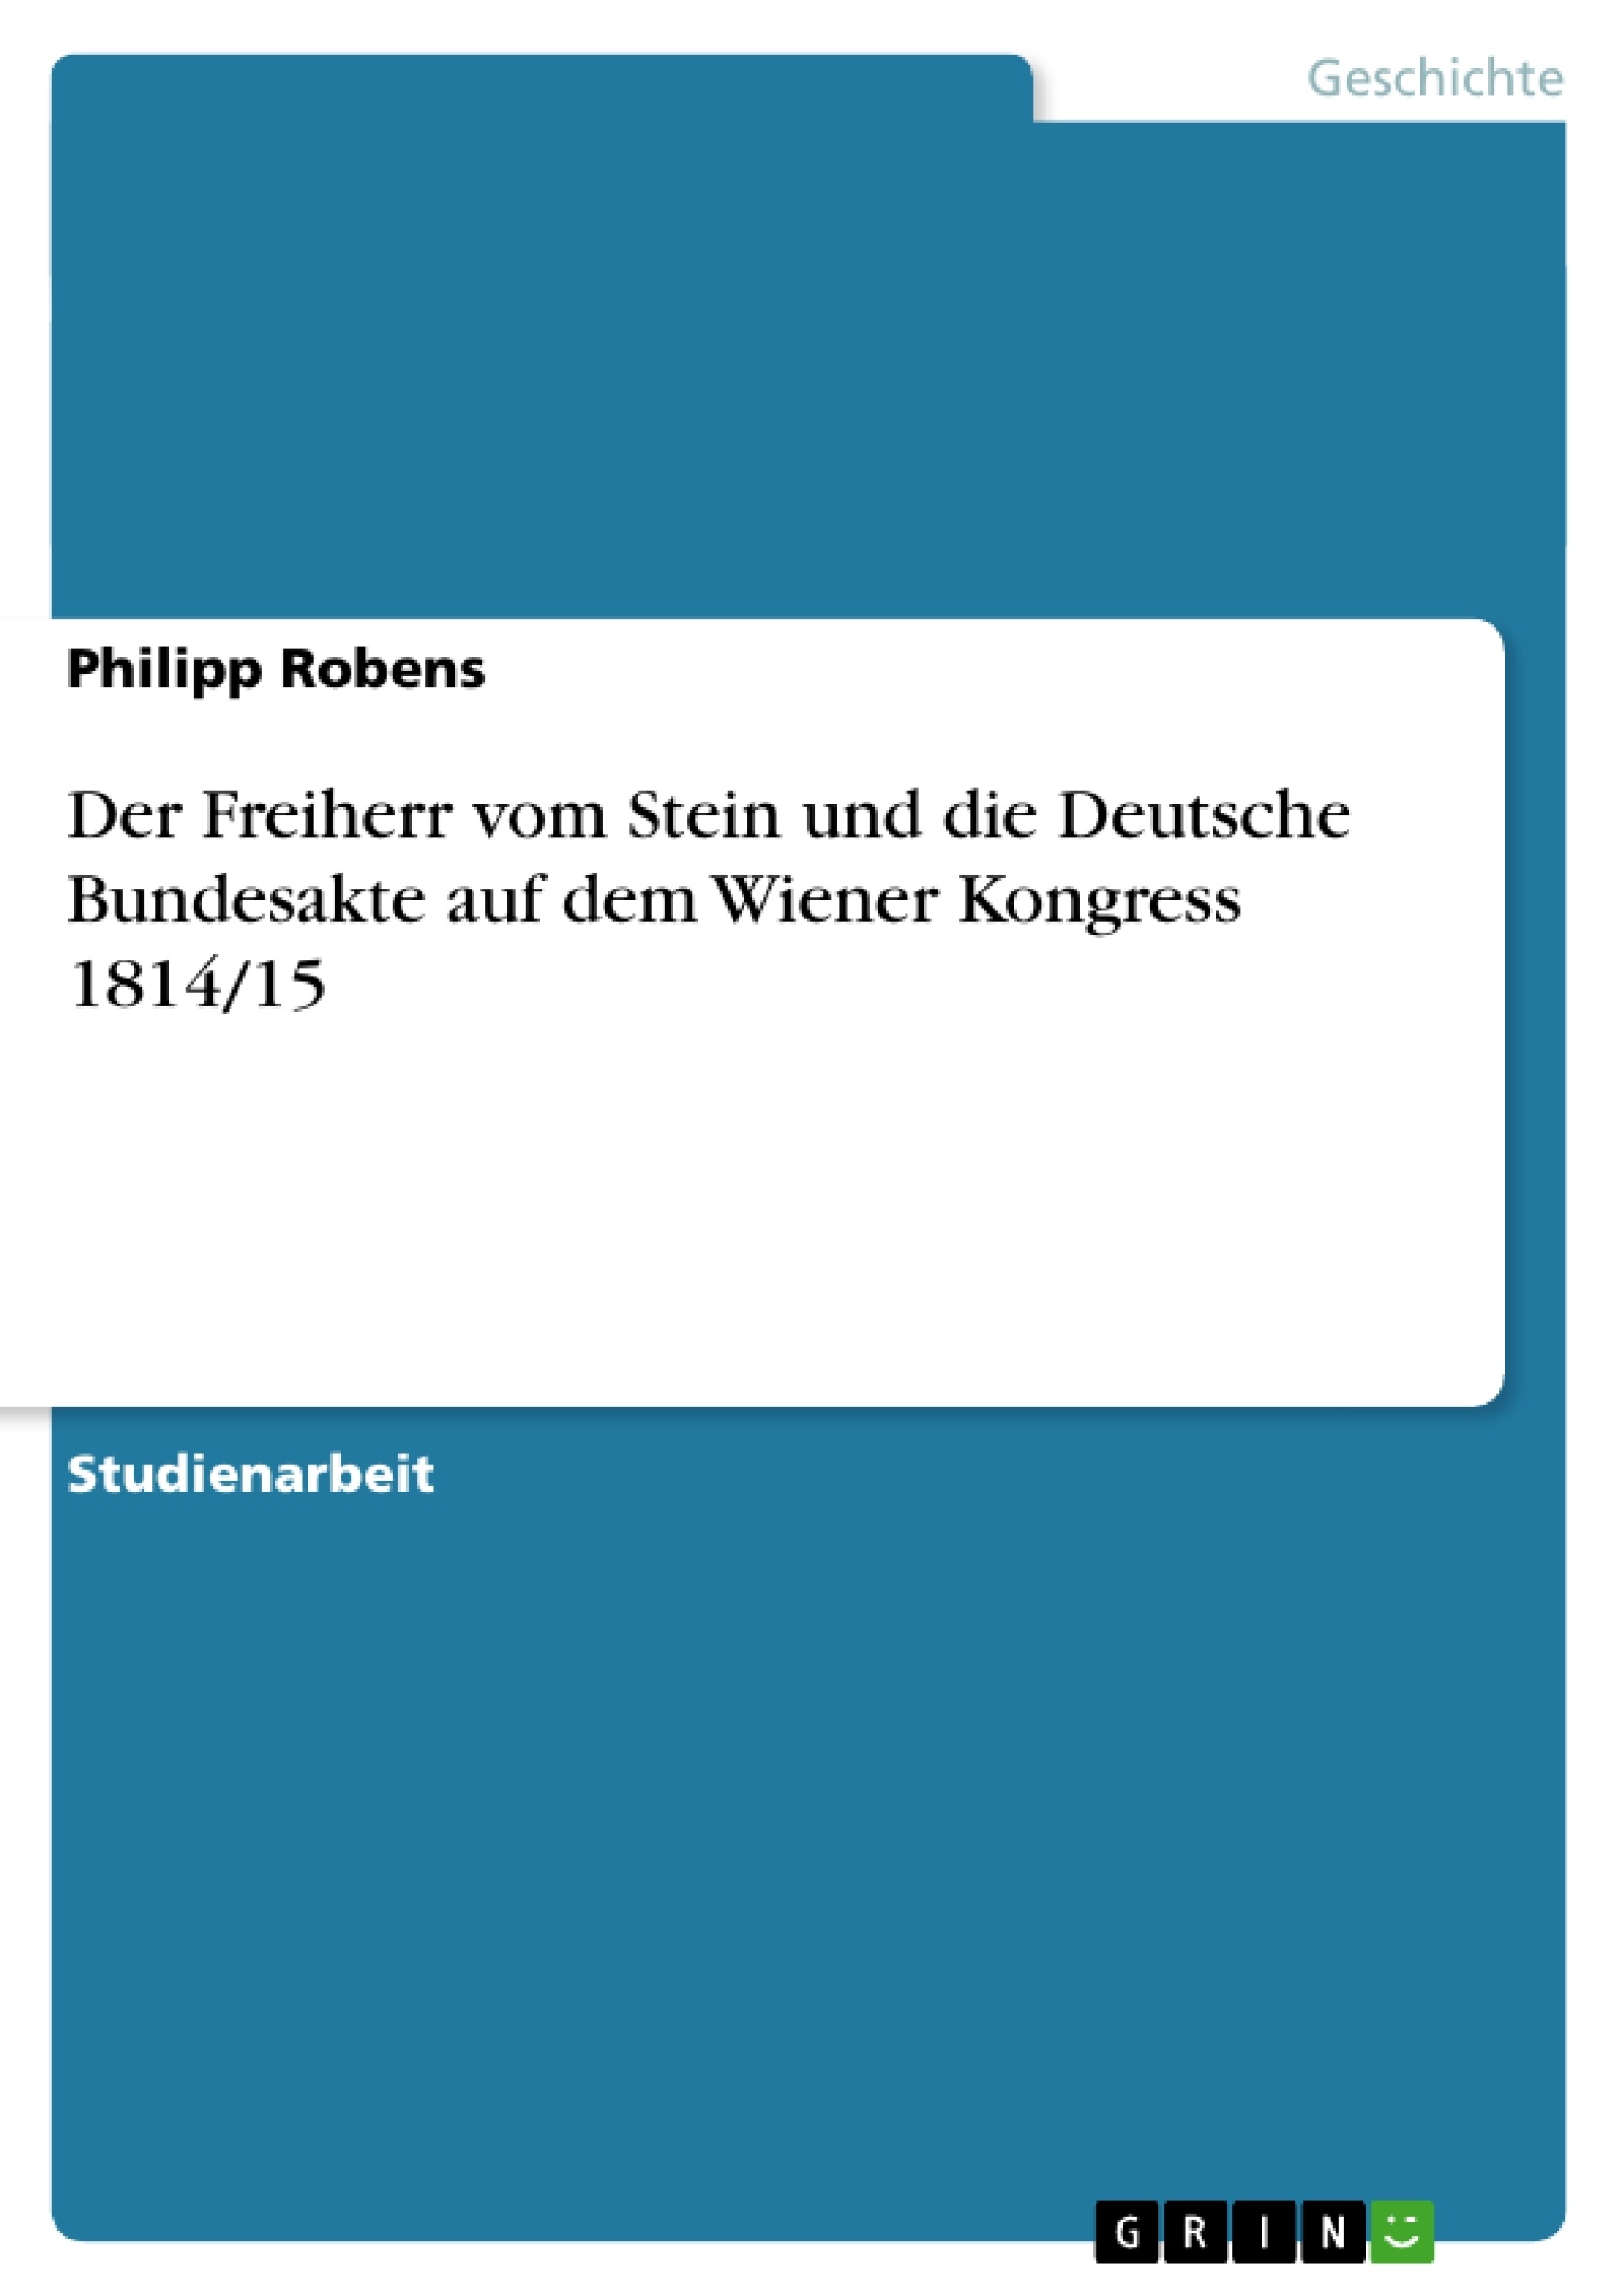 Title: Der Freiherr vom Stein und die Deutsche Bundesakte auf dem Wiener Kongress 1814/15